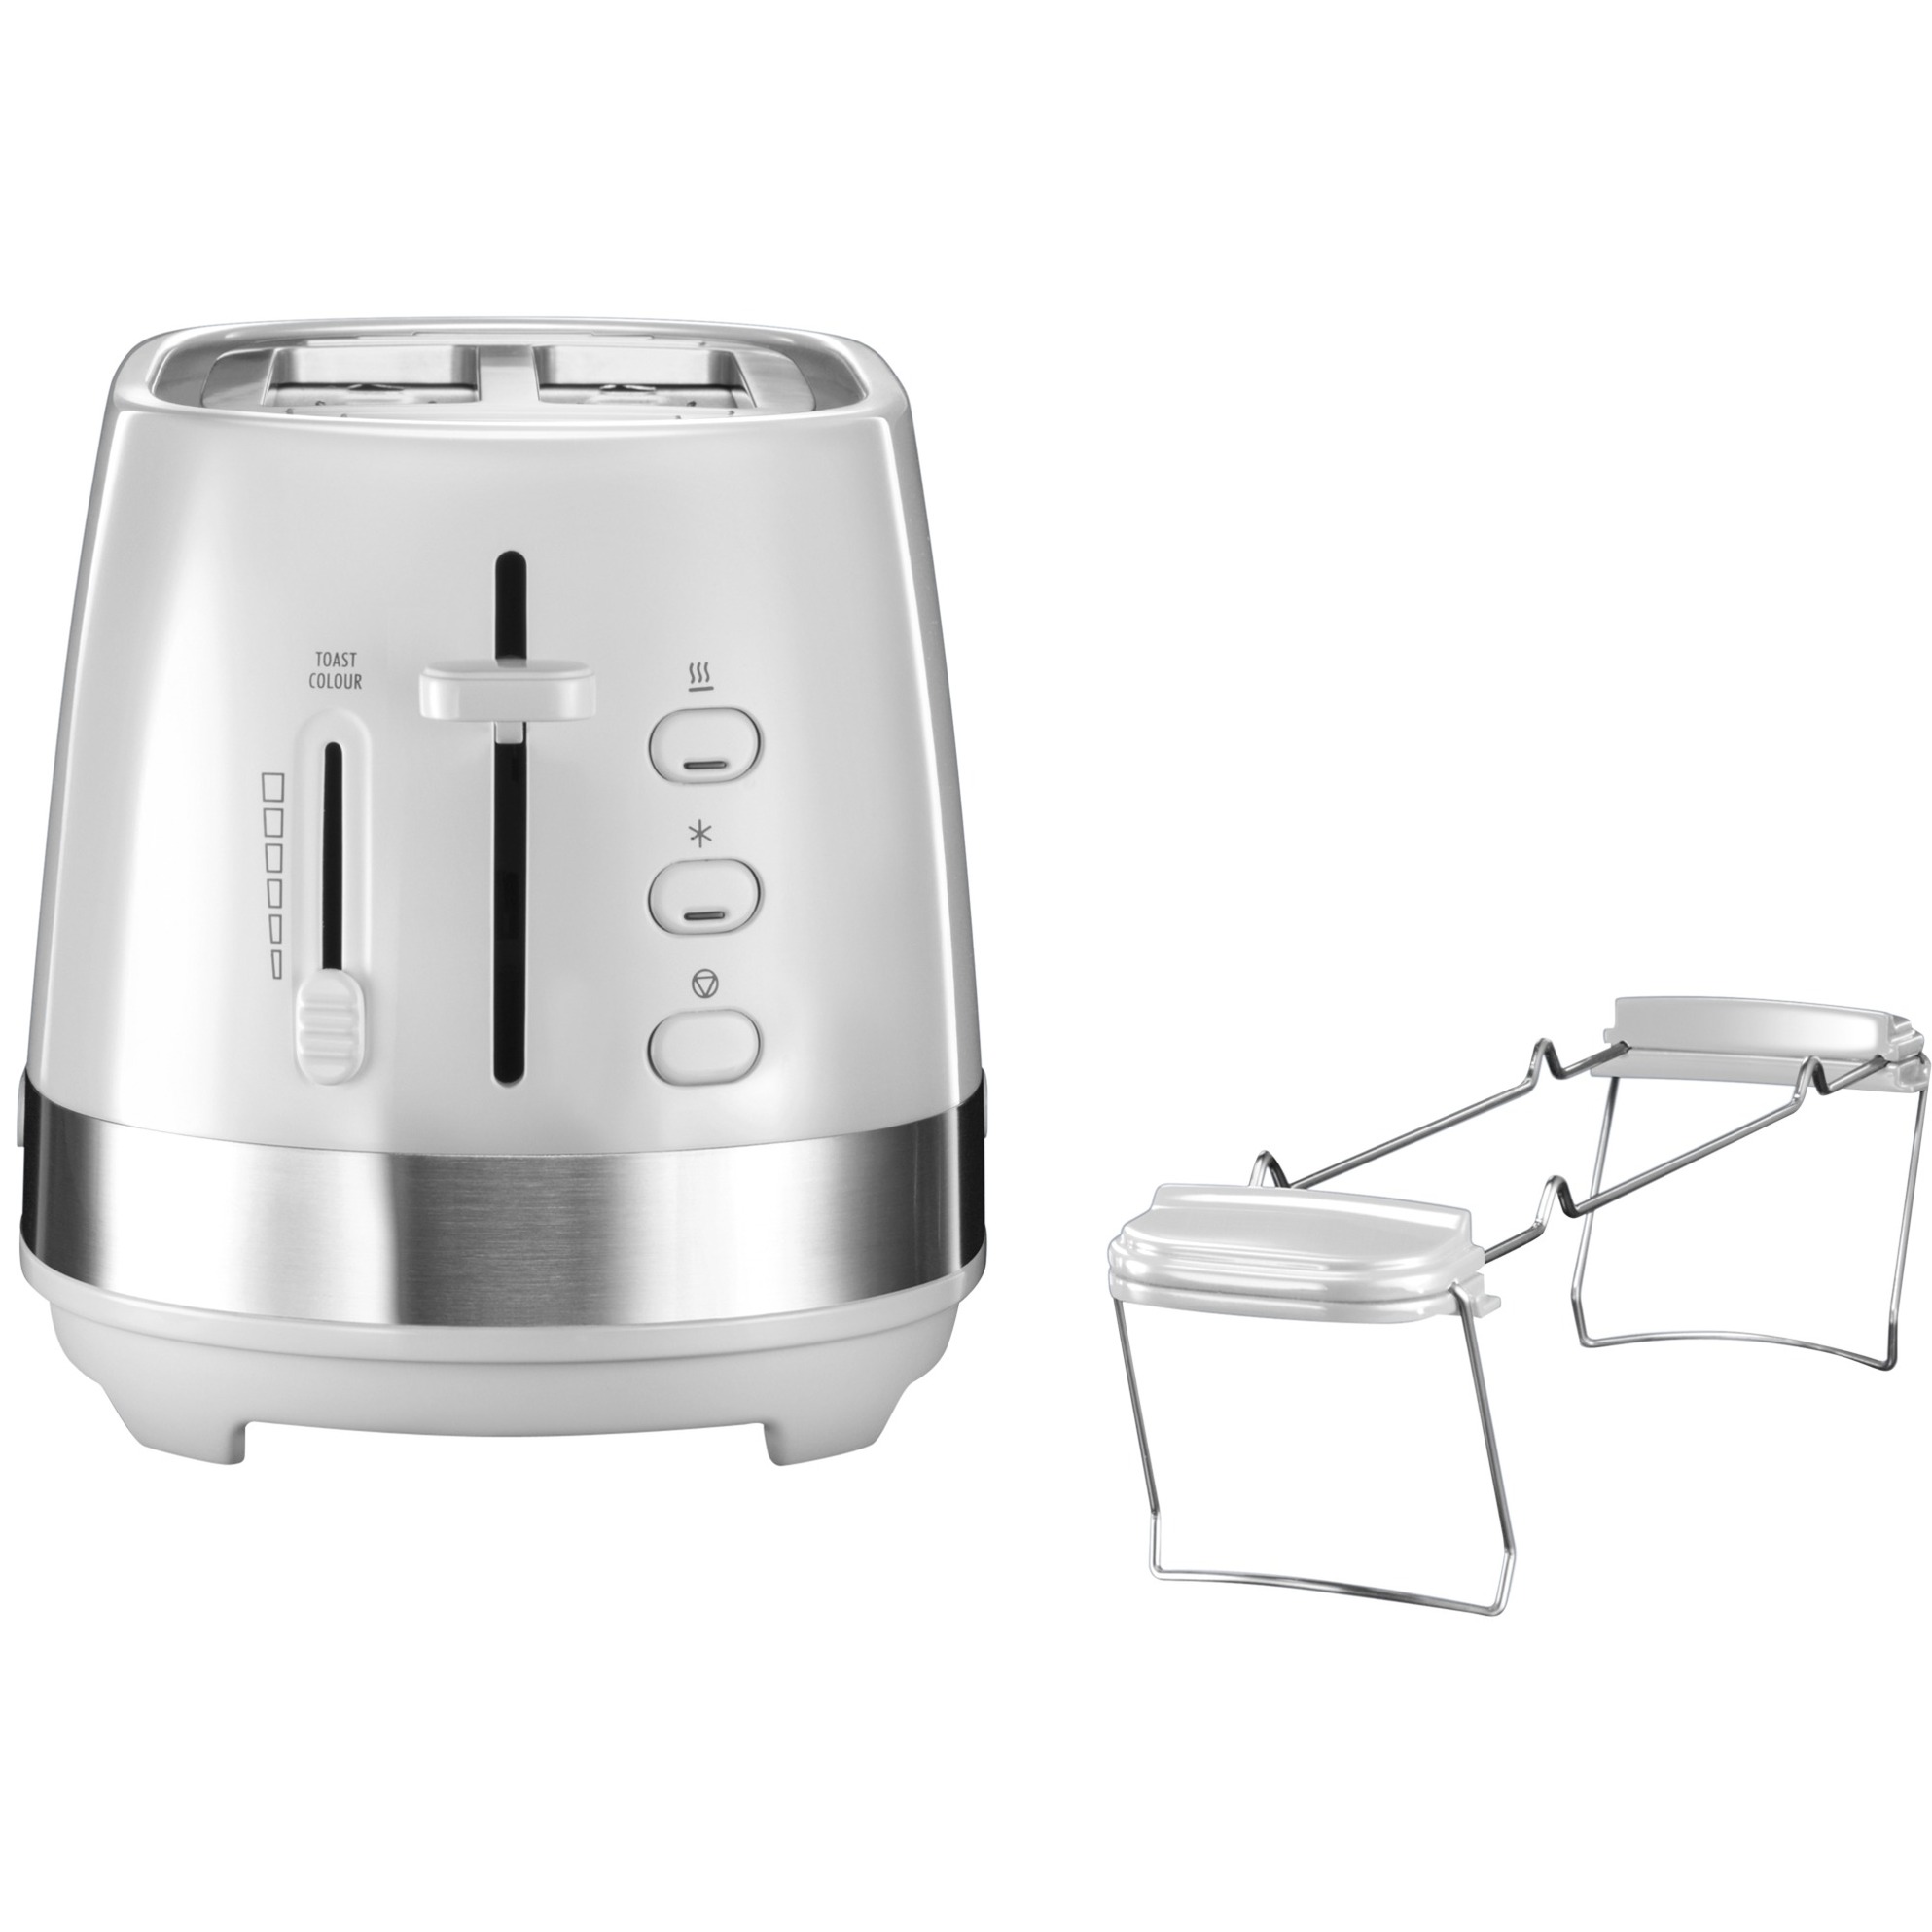 Image of Alternate - CTLA 2103, Toaster online einkaufen bei Alternate